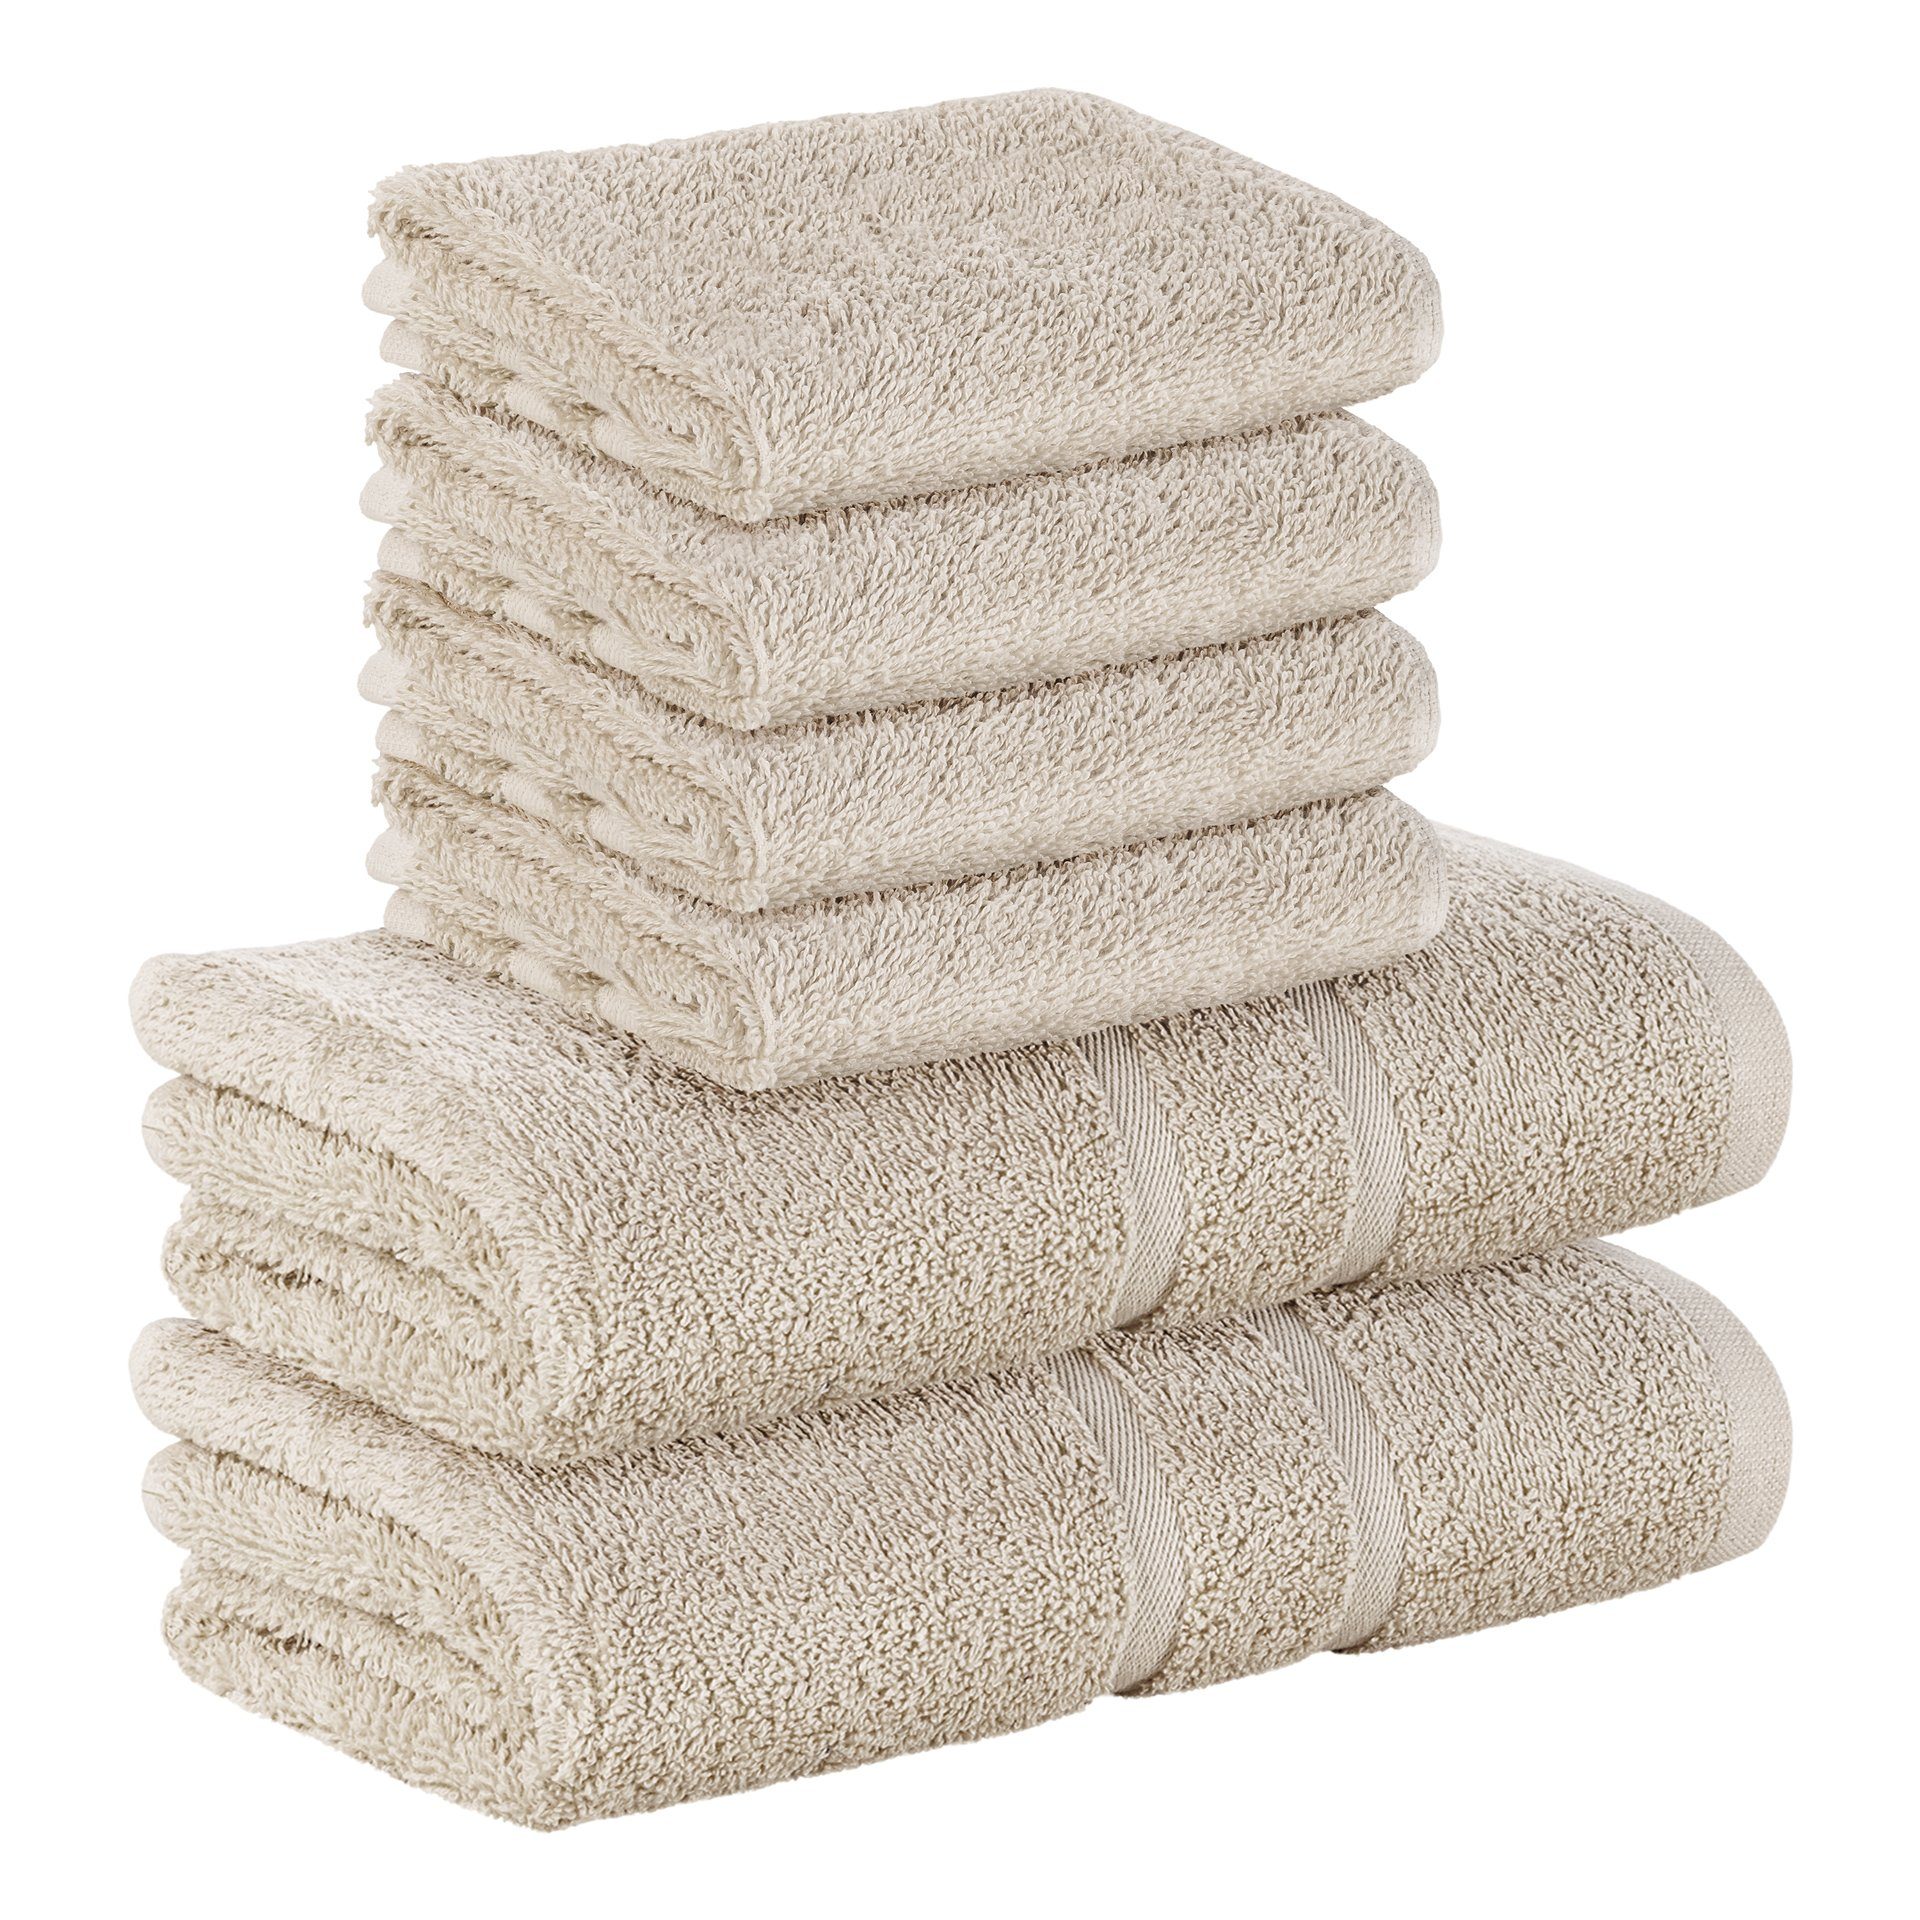 StickandShine Handtuch Set 4x Gästehandtuch 2x Handtücher als SET in verschiedenen Farben (6 Teilig) 100% Baumwolle 500 GSM Frottee 6er Handtuch Pack, (Sparset), 100% Baumwolle 500 GSM Sand